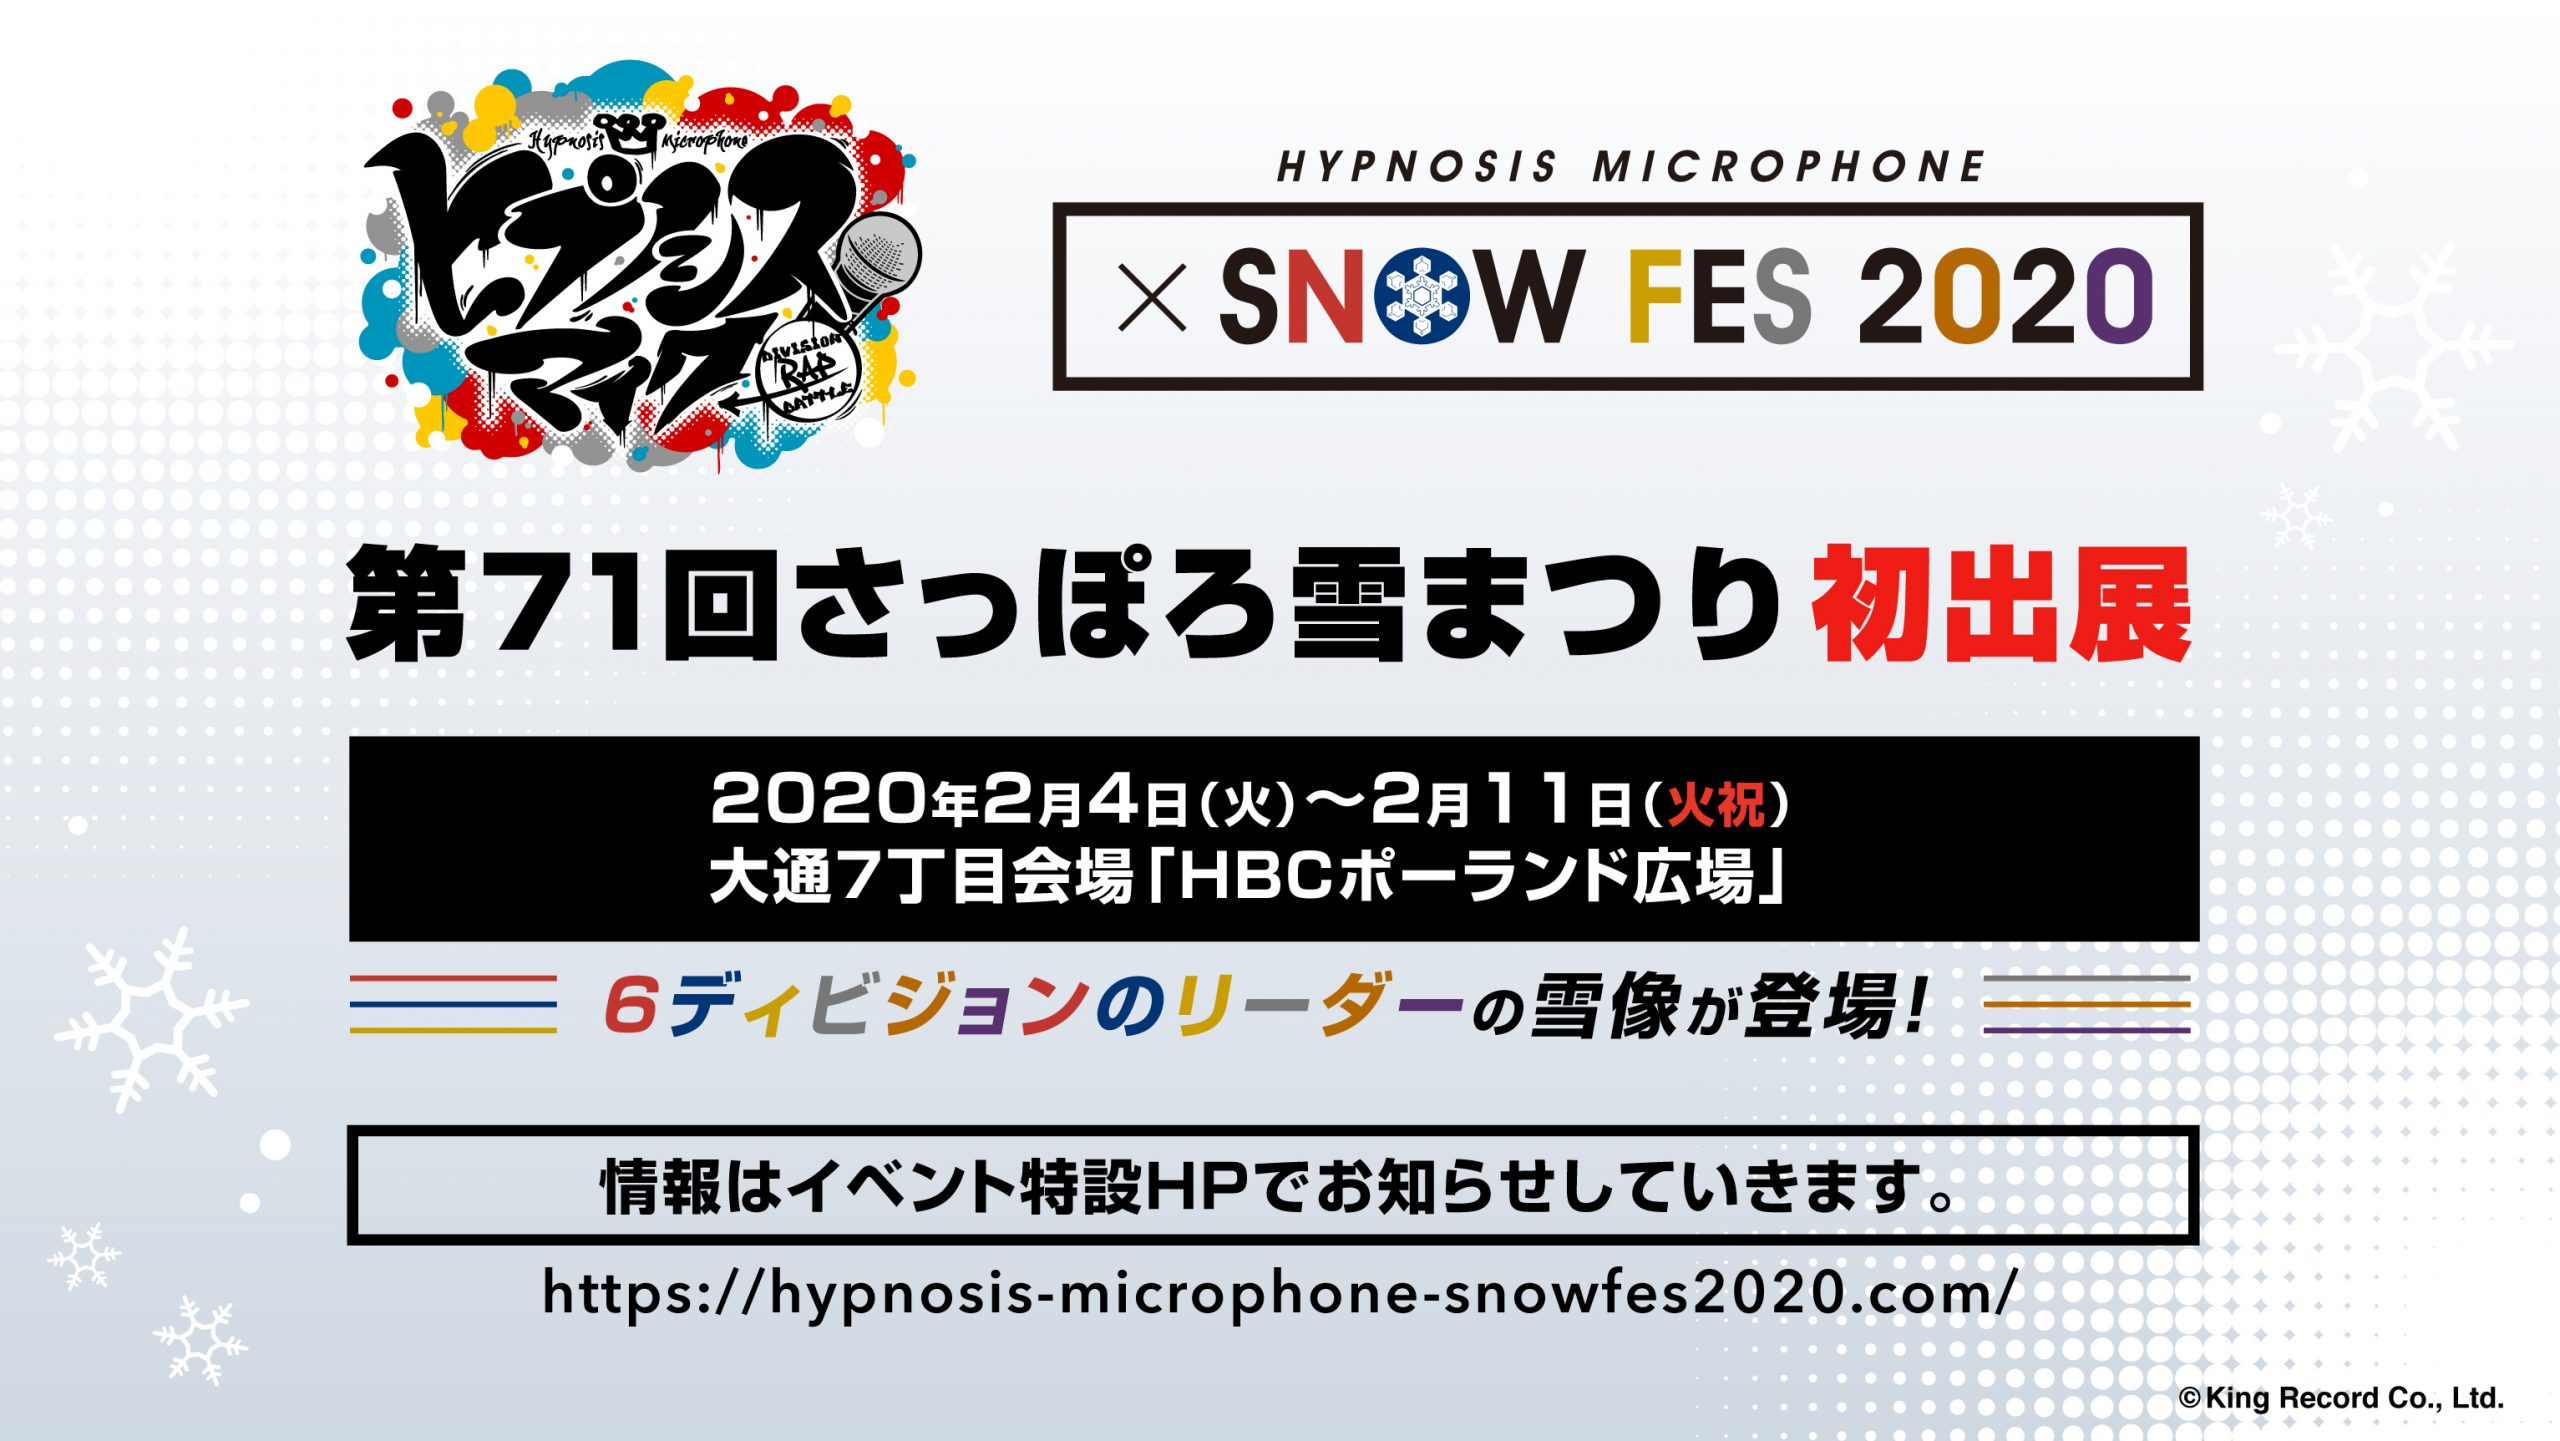 ヒプマイ Hypnosis Microphone Snow Fes さっぽろ雪まつりで雪像 限定グッズ登場 Uzurea Net